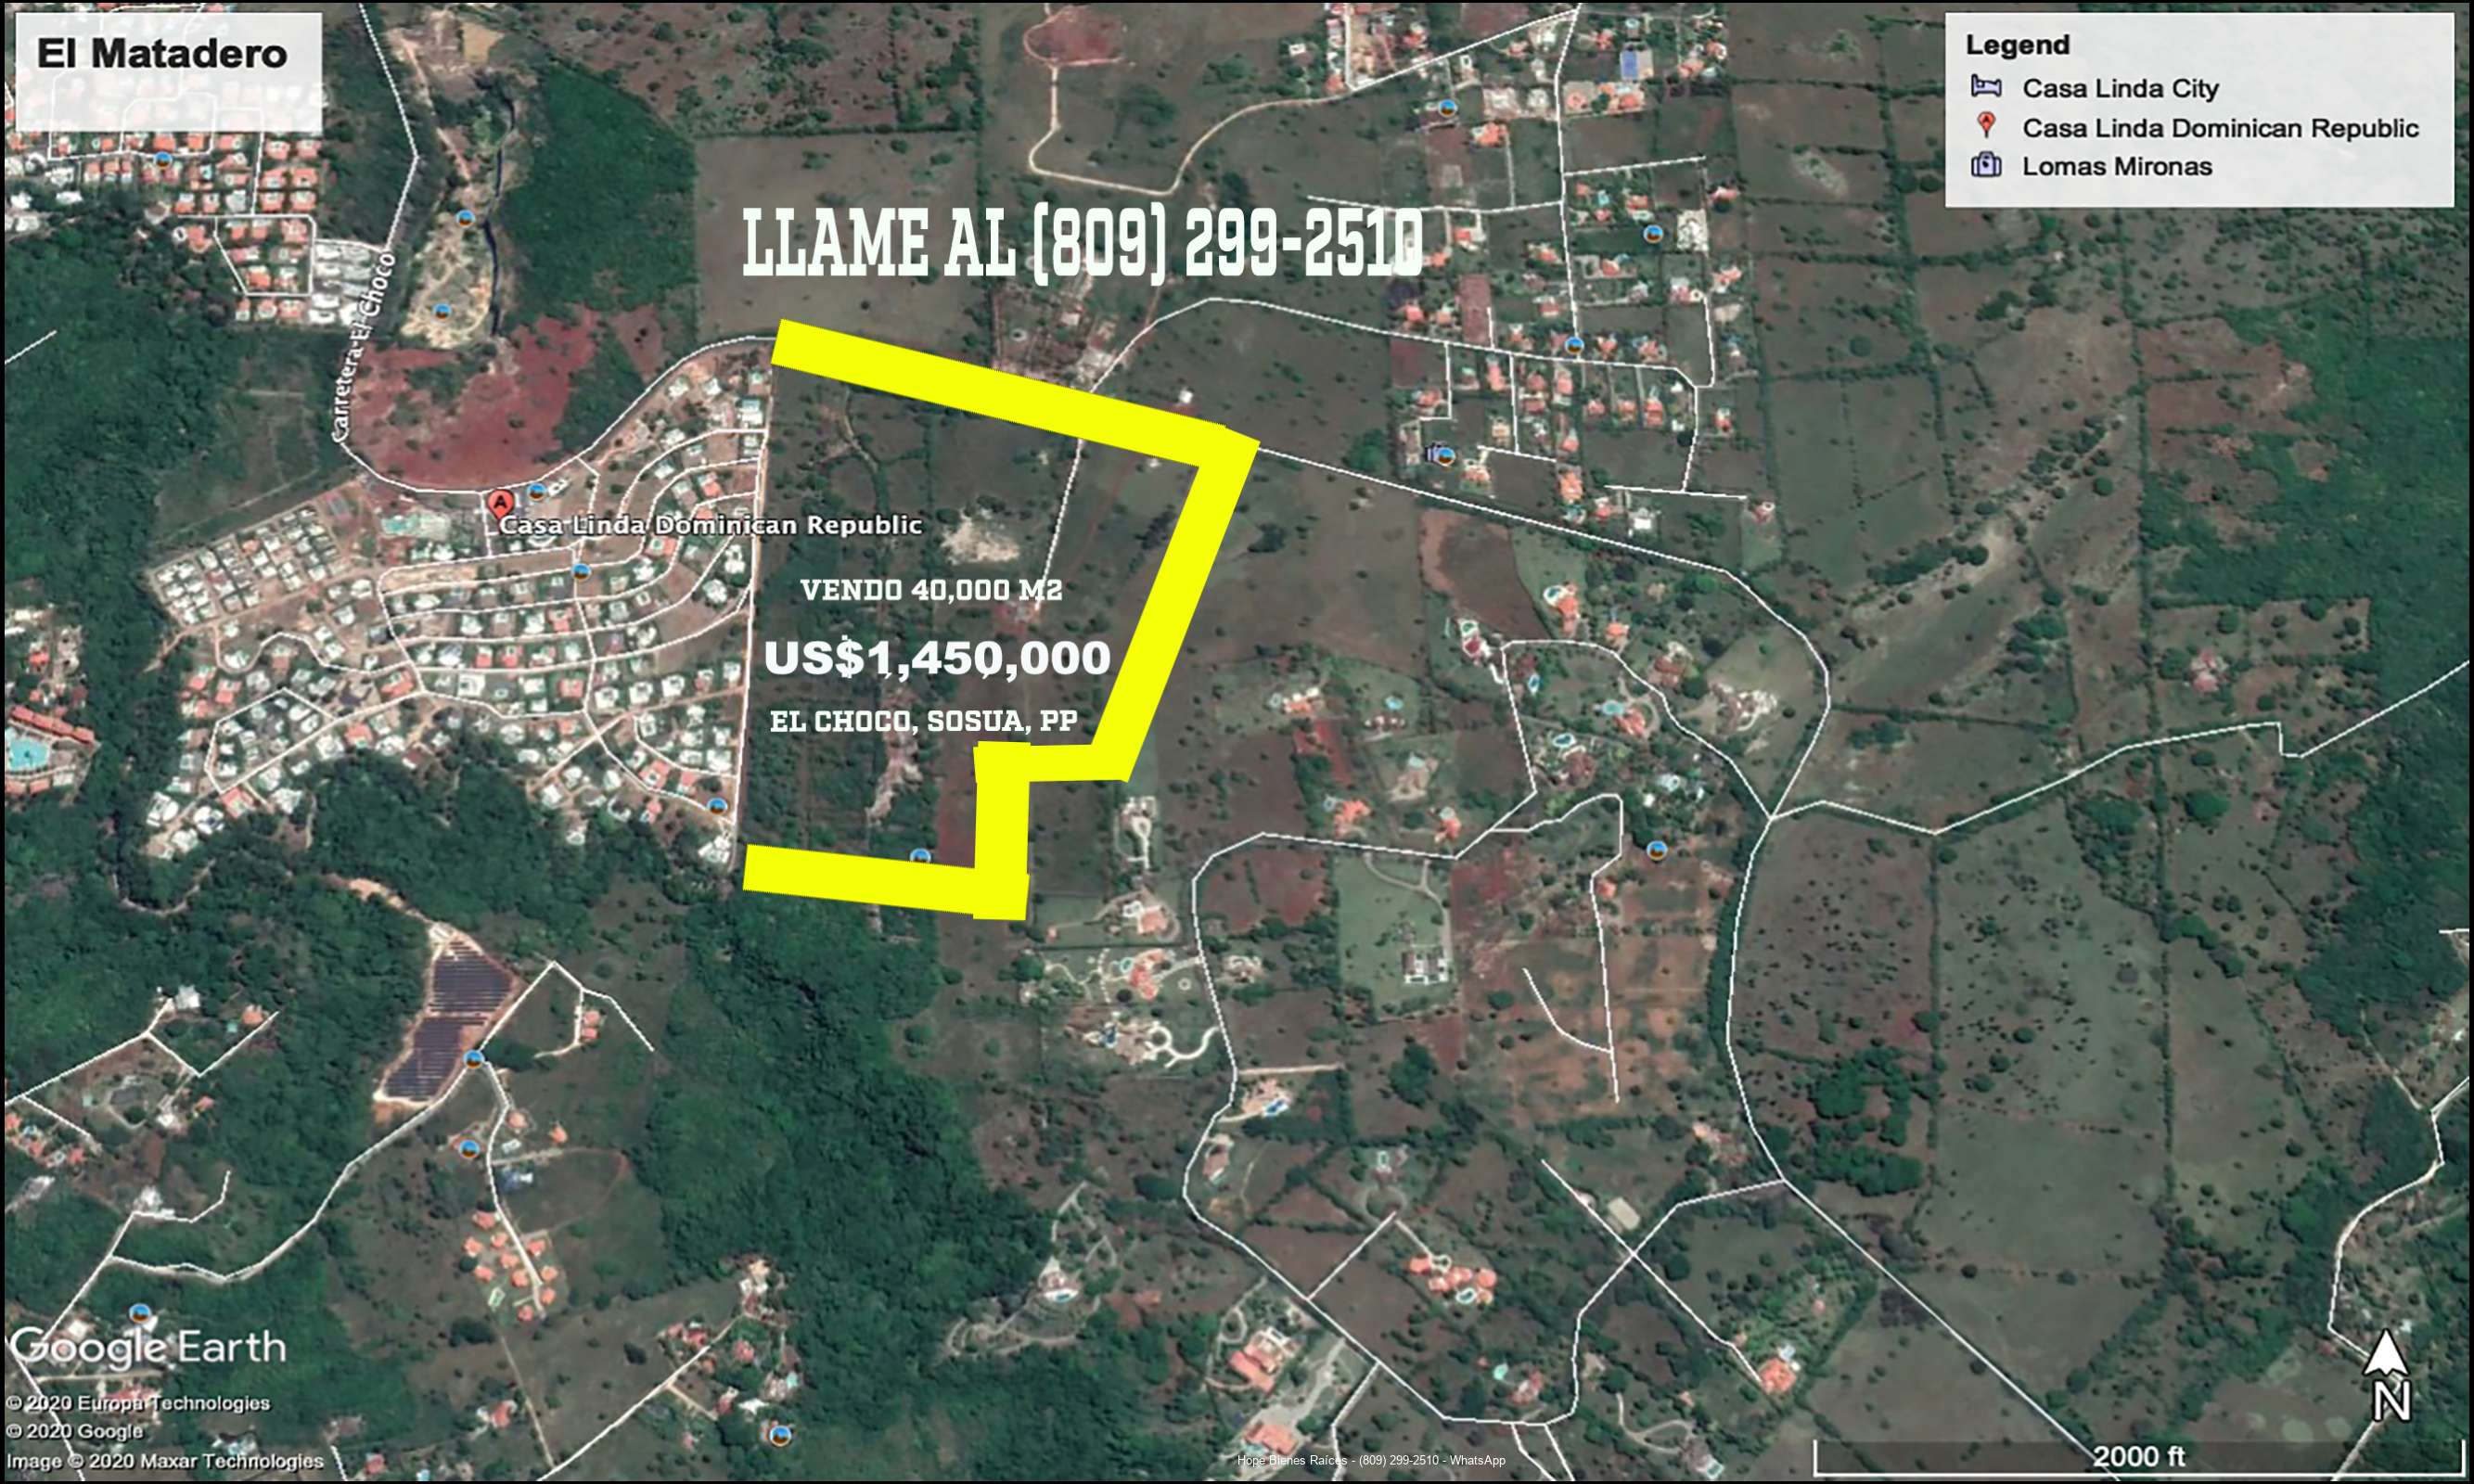 Vendo Terreno en El Choco, Sosua con 40,000 m2